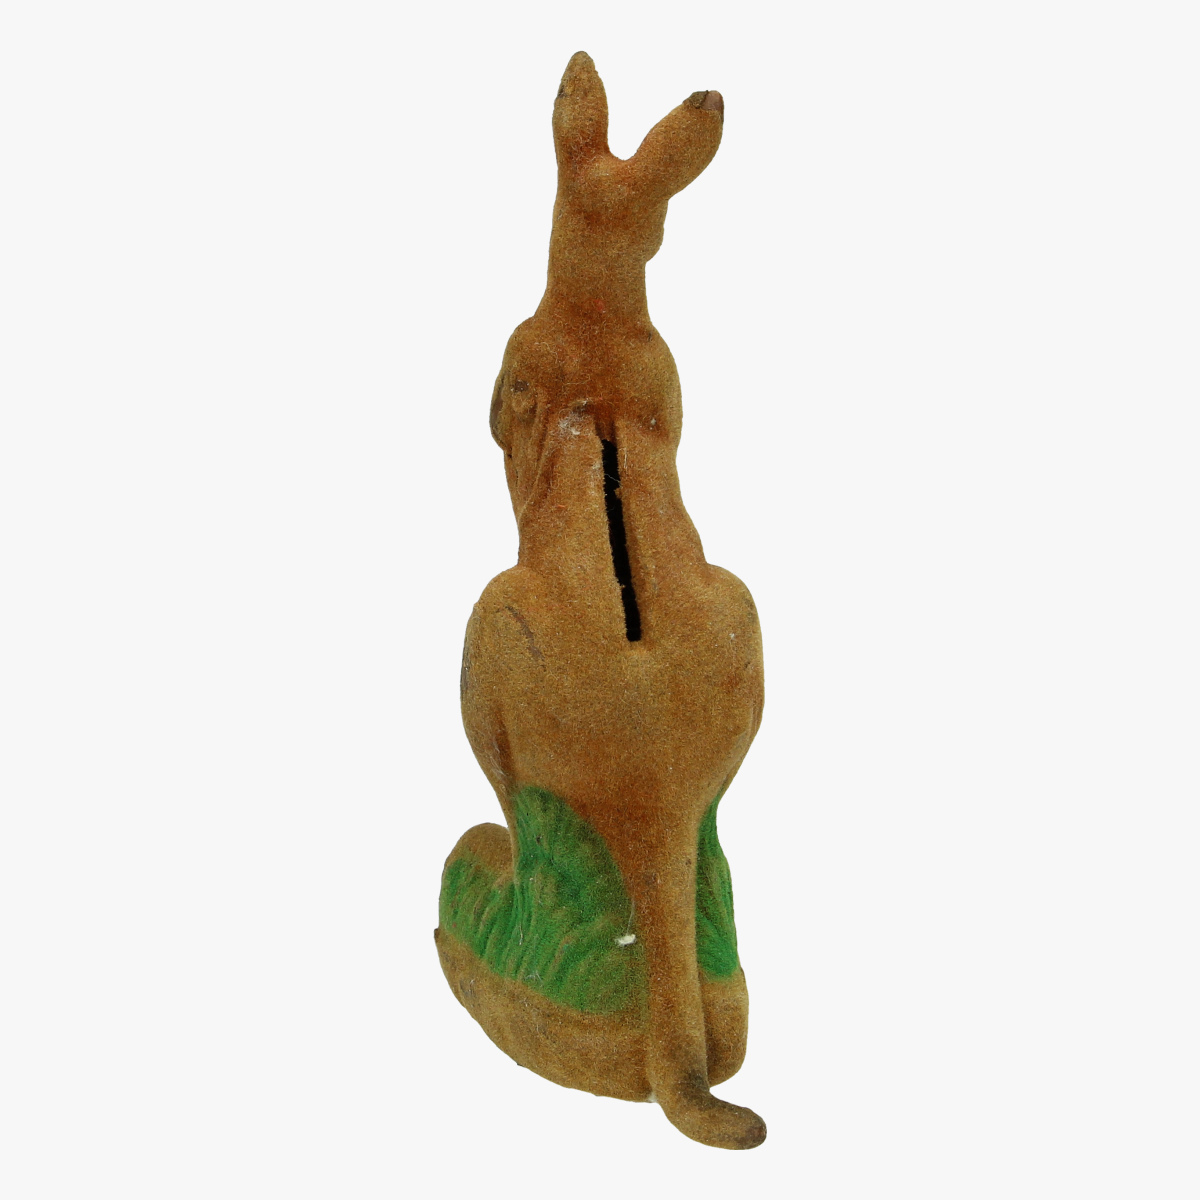 Afbeeldingen van spaarpot kangeroe met jong